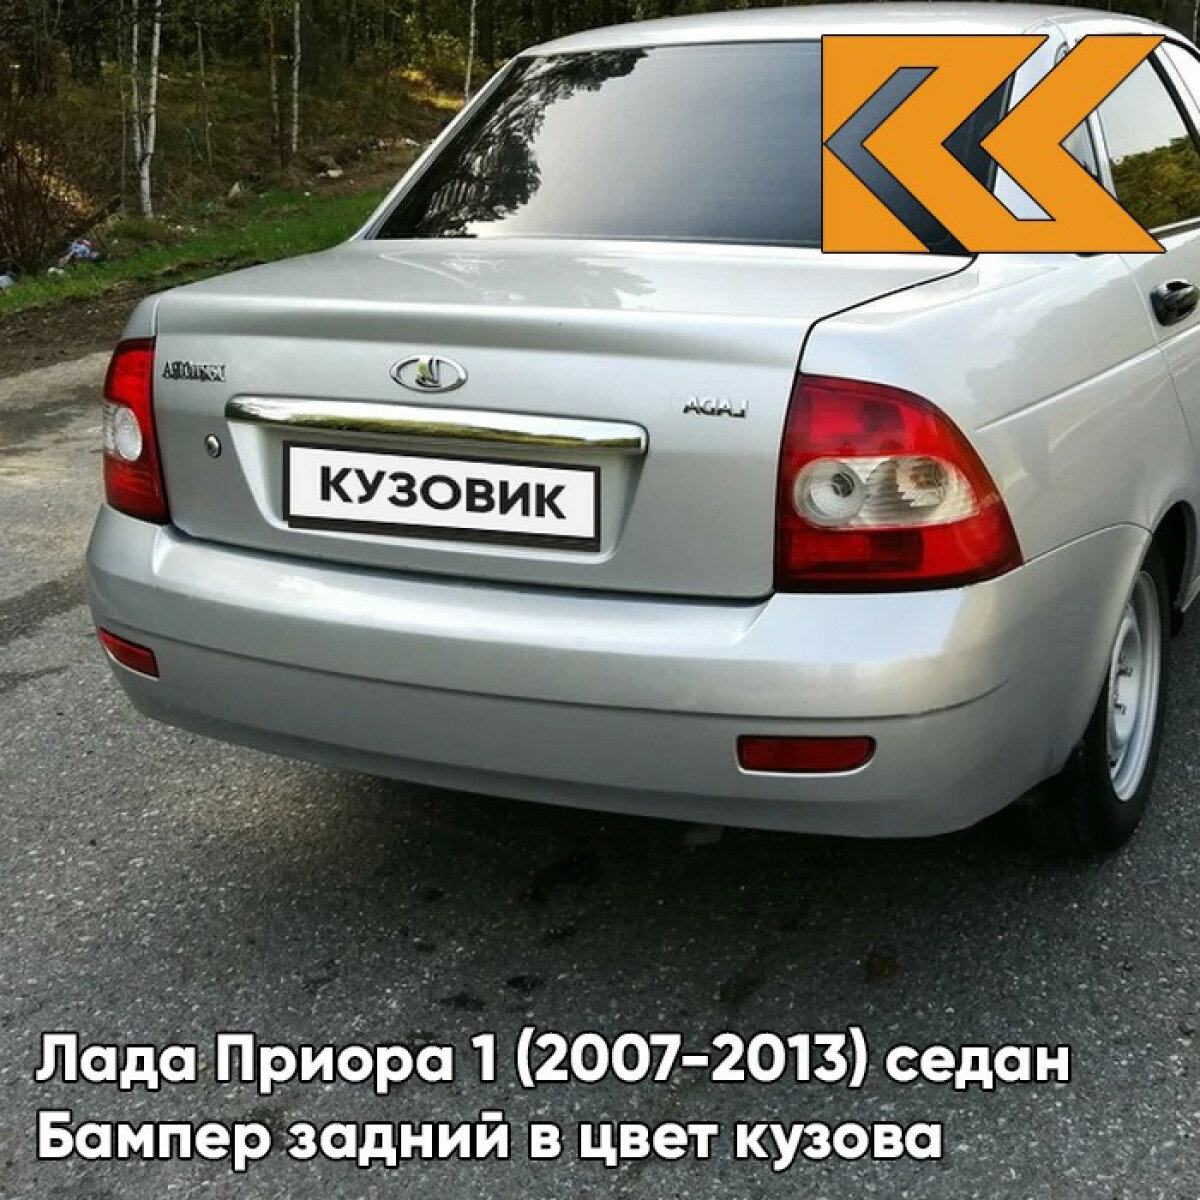 Бампер задний в цвет Лада Приора 1 (2007-2013) седан 690 - Снежная королева - Серебристый